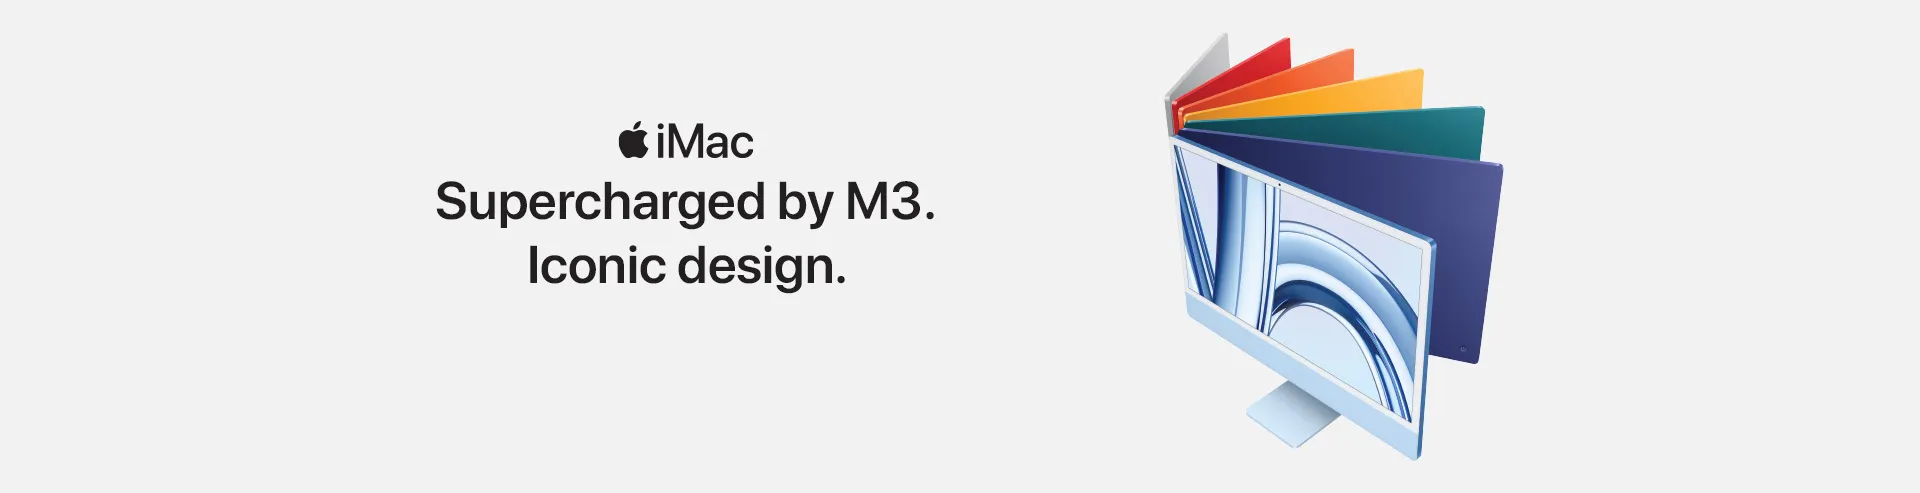 VM-Hero-iMac-1920x493.webp